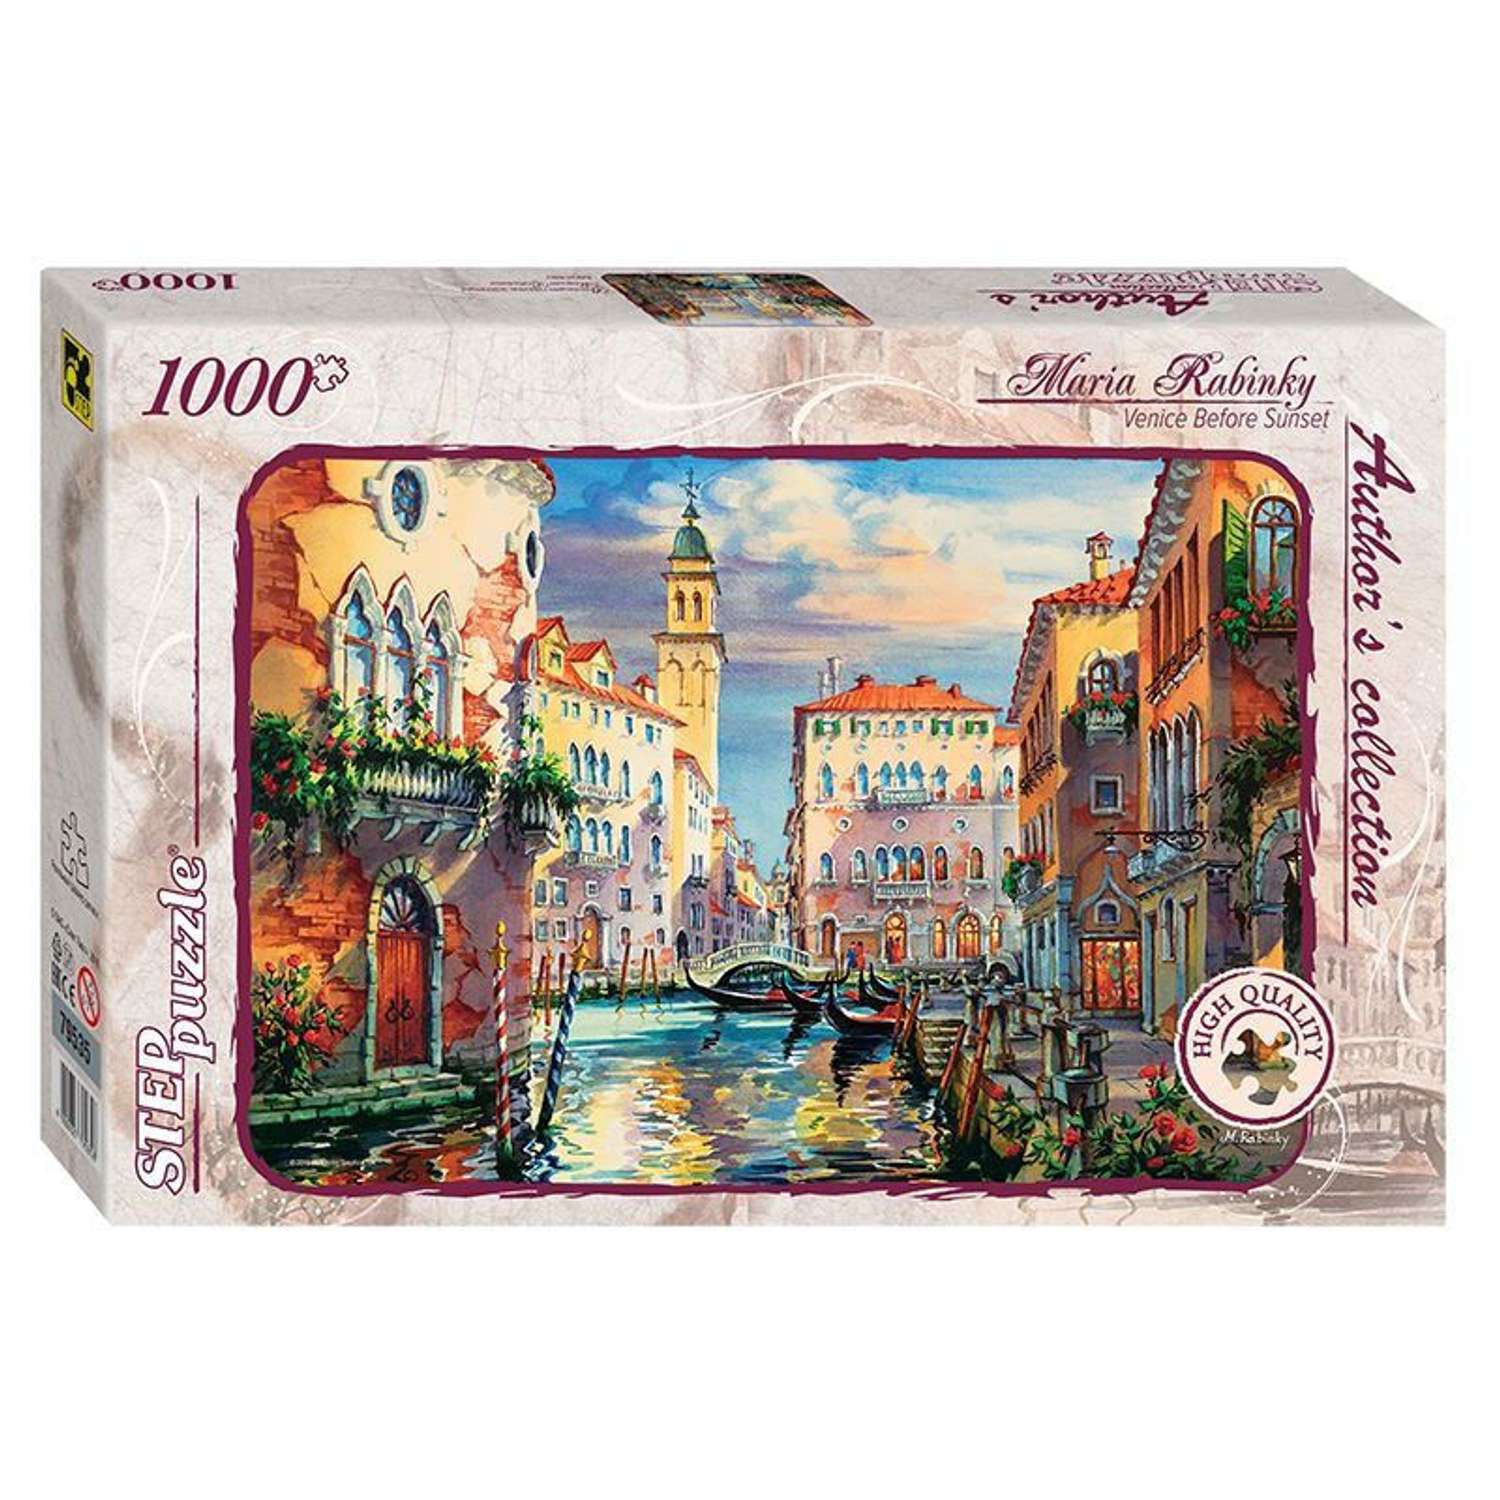 Пазл Step Puzzle Авторская коллекция Венеция перед закатом 1000 элементов 79535 - фото 1